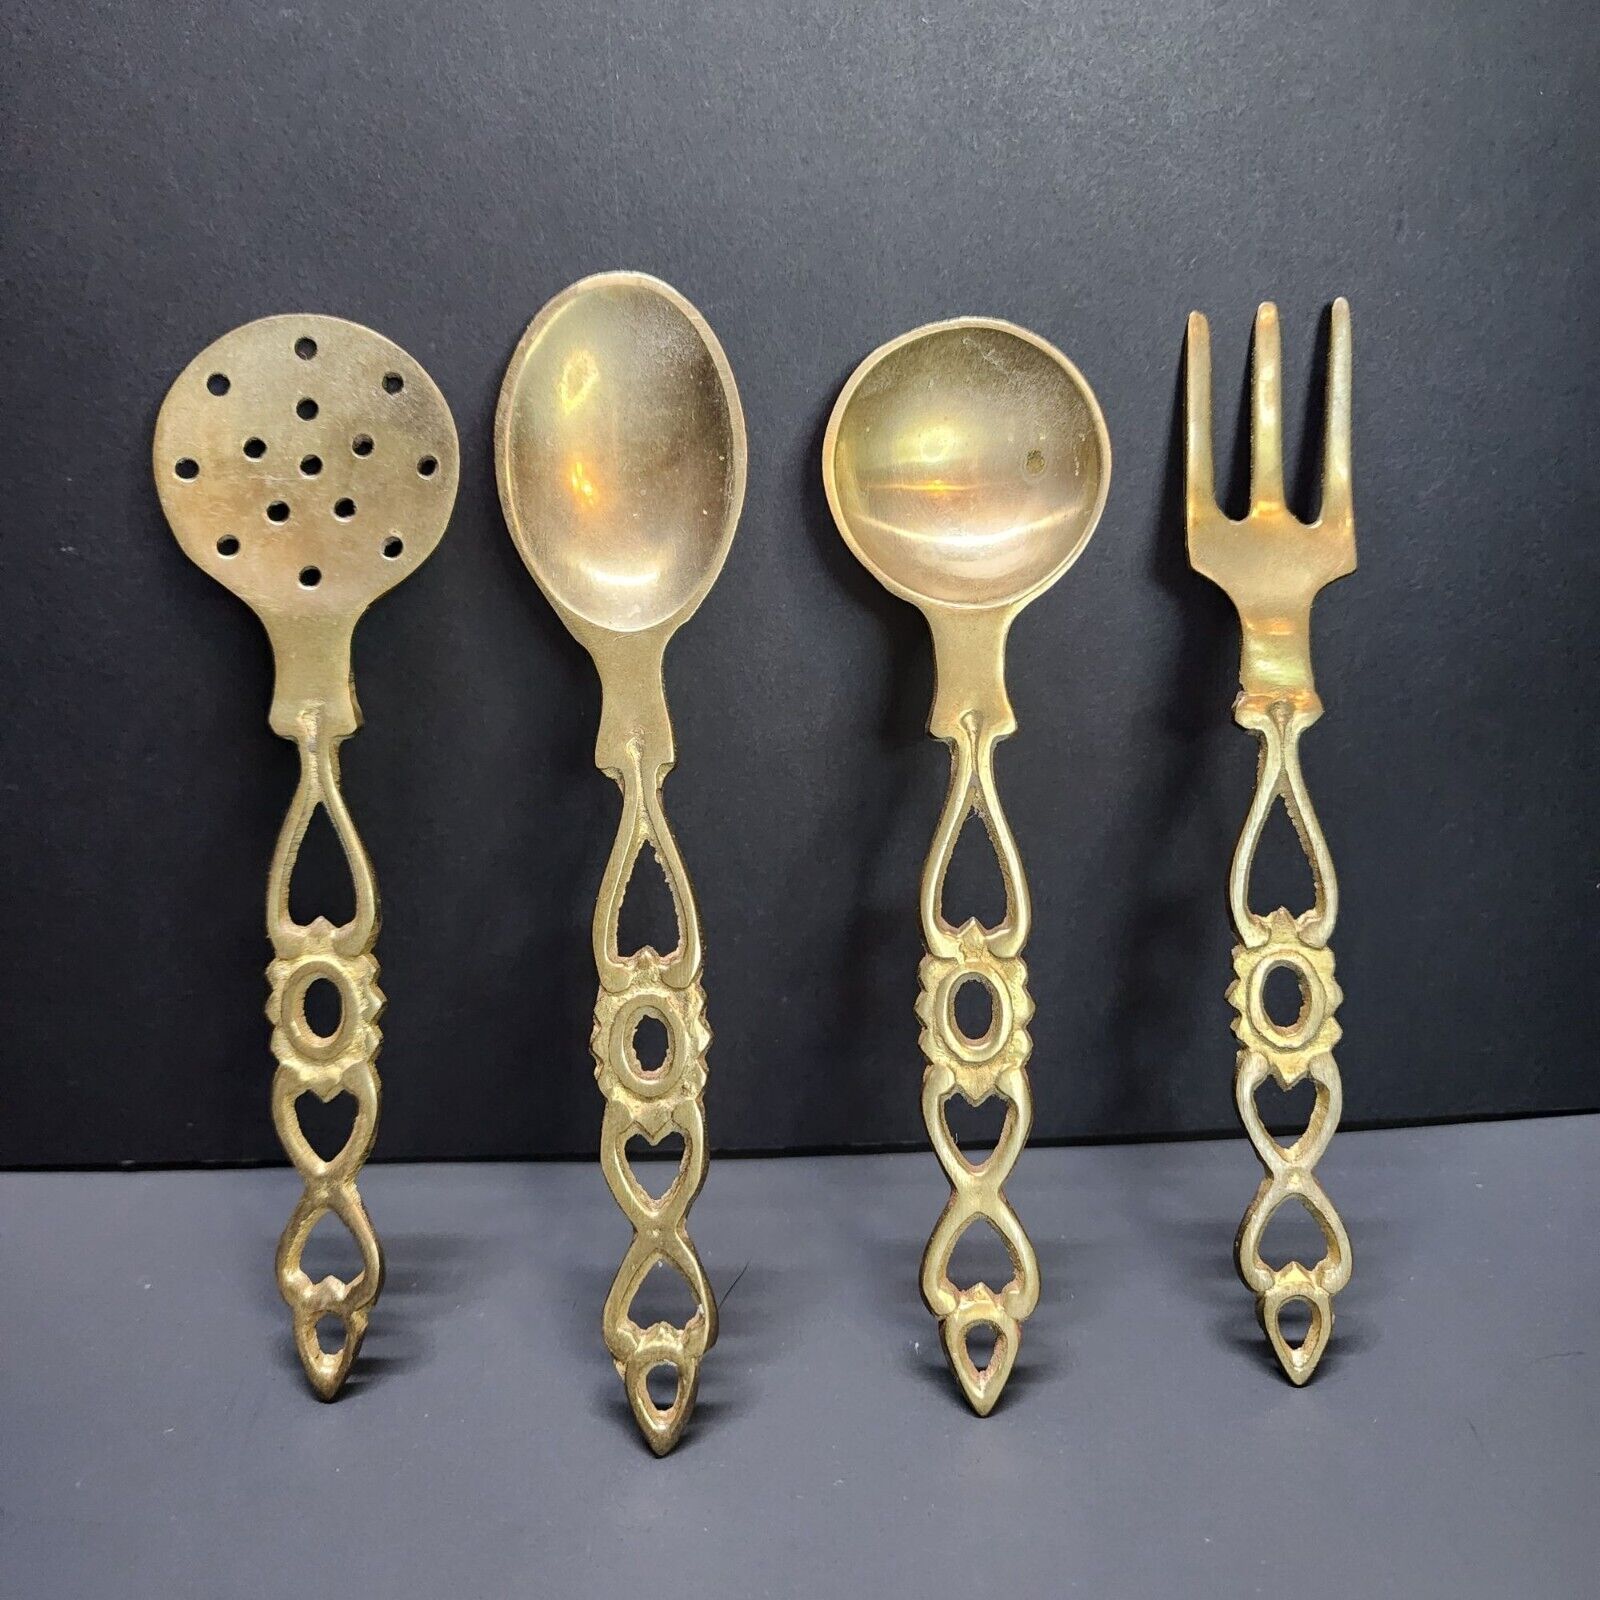 Vintage Antique Brass Cooking Serving Utensils Spoons Fork & Skimmer - Set Of 4